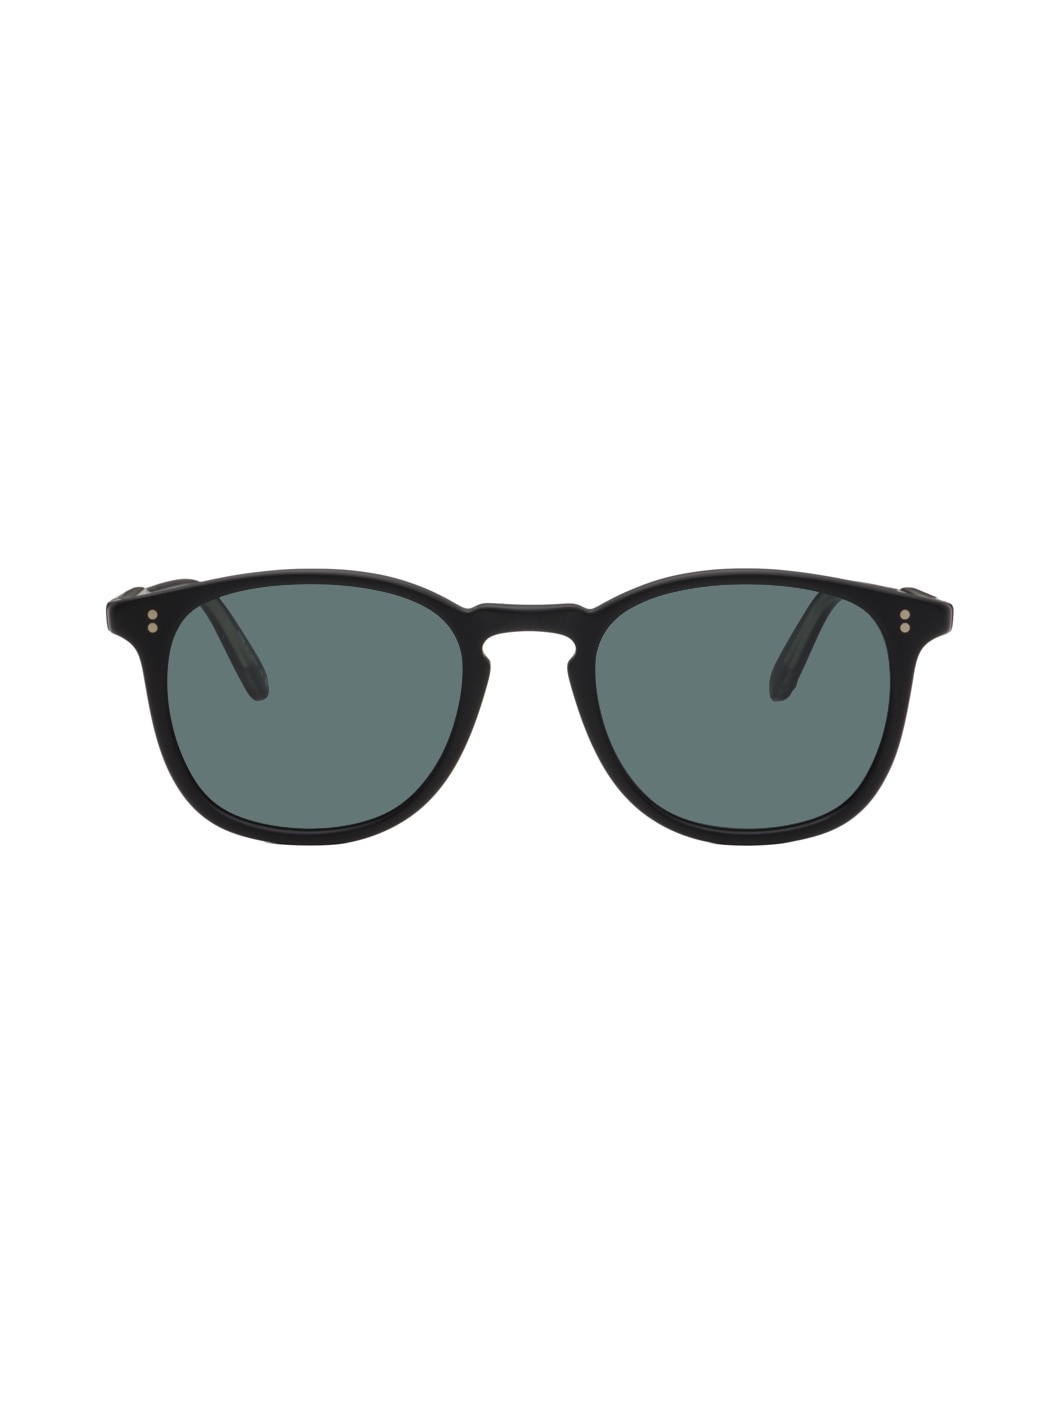 Black Kinney Sunglasses - 1